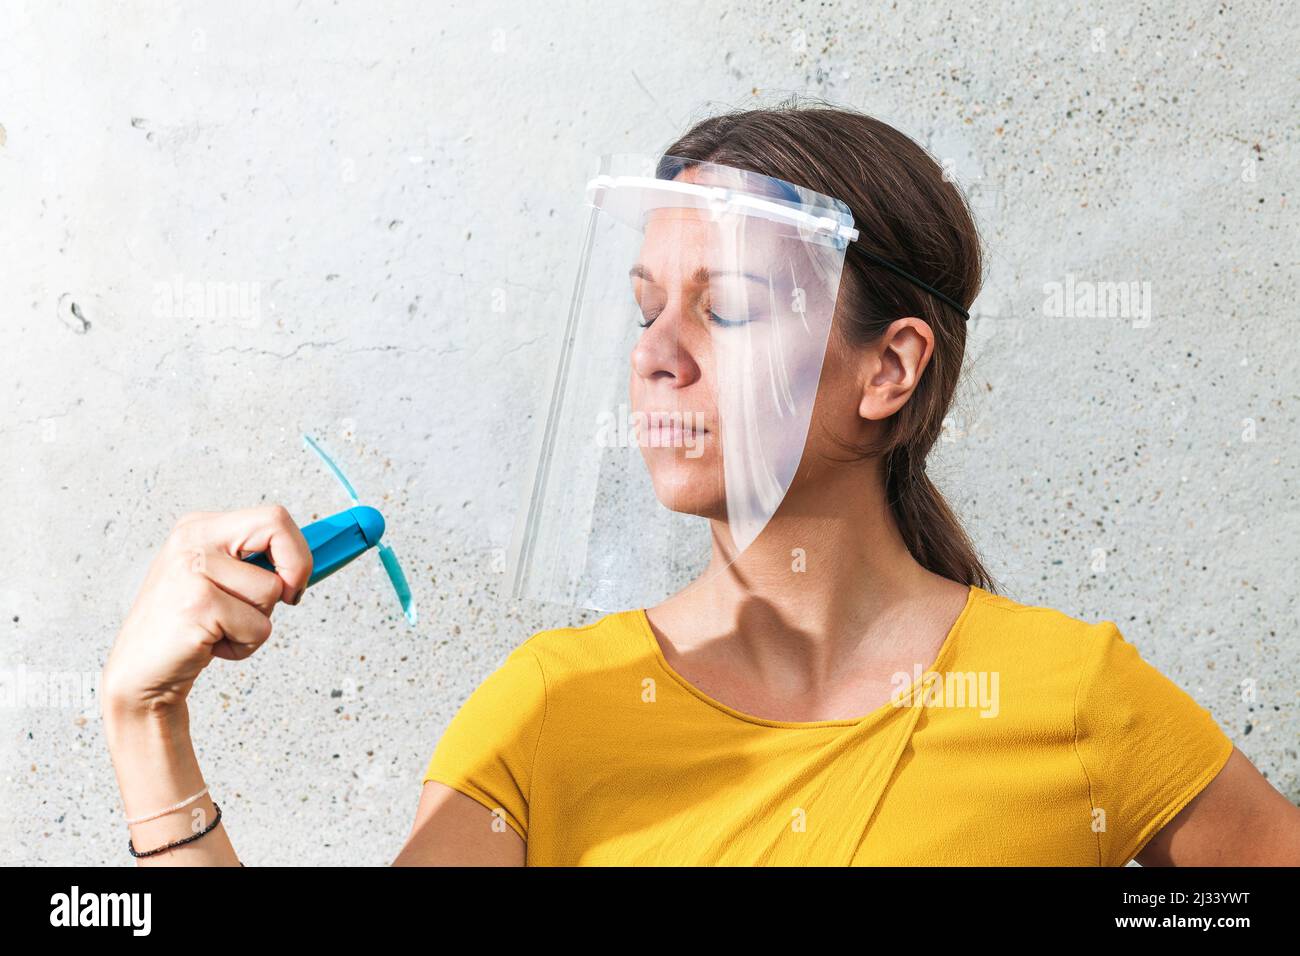 Junge Frau kühlt sich mit einem Handventilator ab, während sie ein Schutzvisier trägt Stockfoto